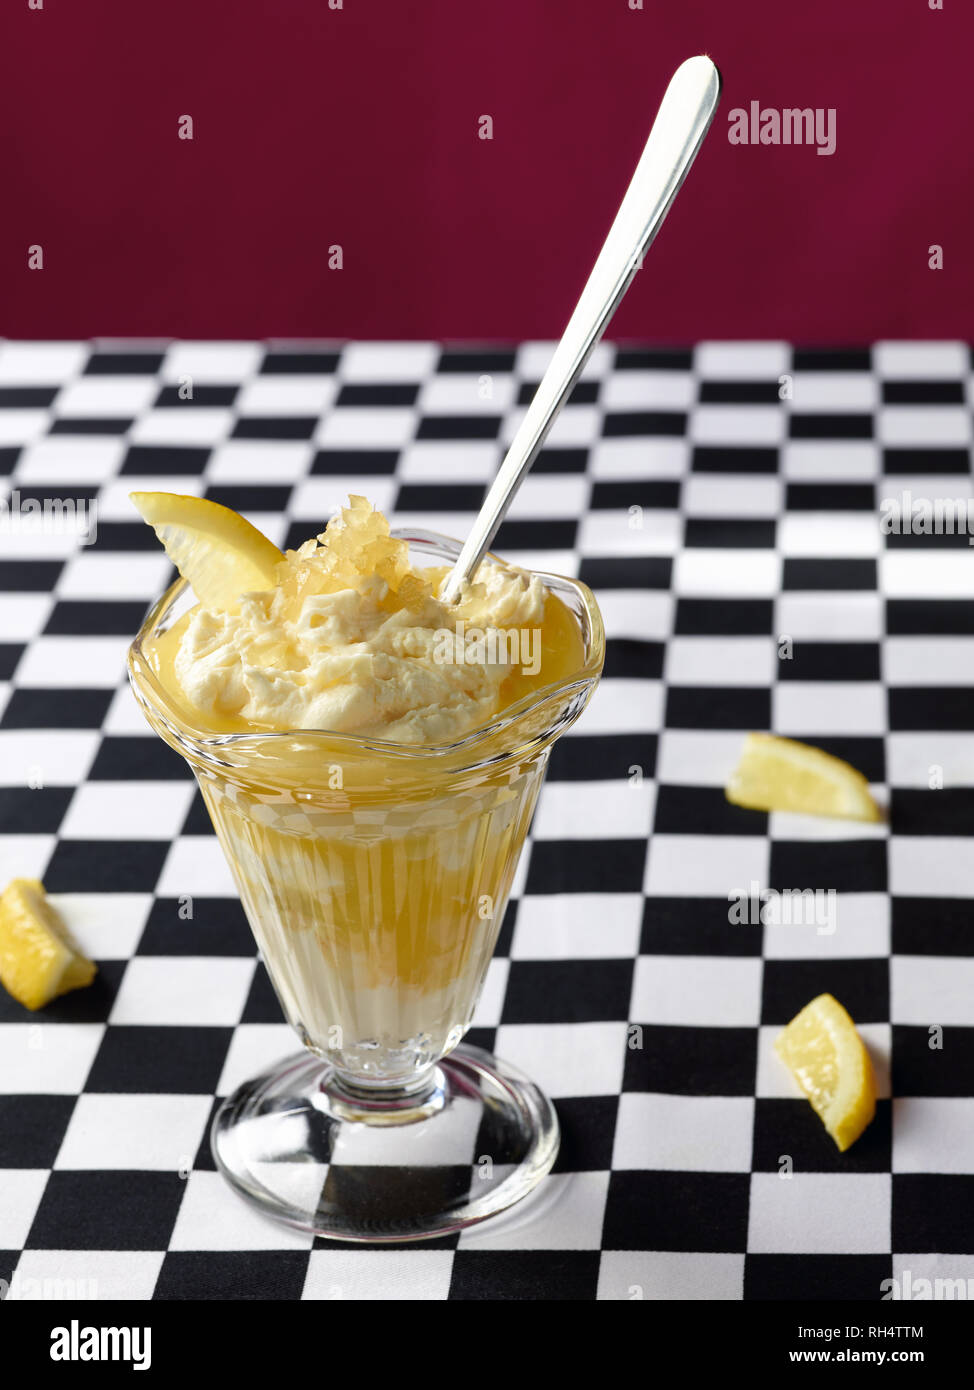 Pots gingembre citron servi dans un verre sundae Banque D'Images